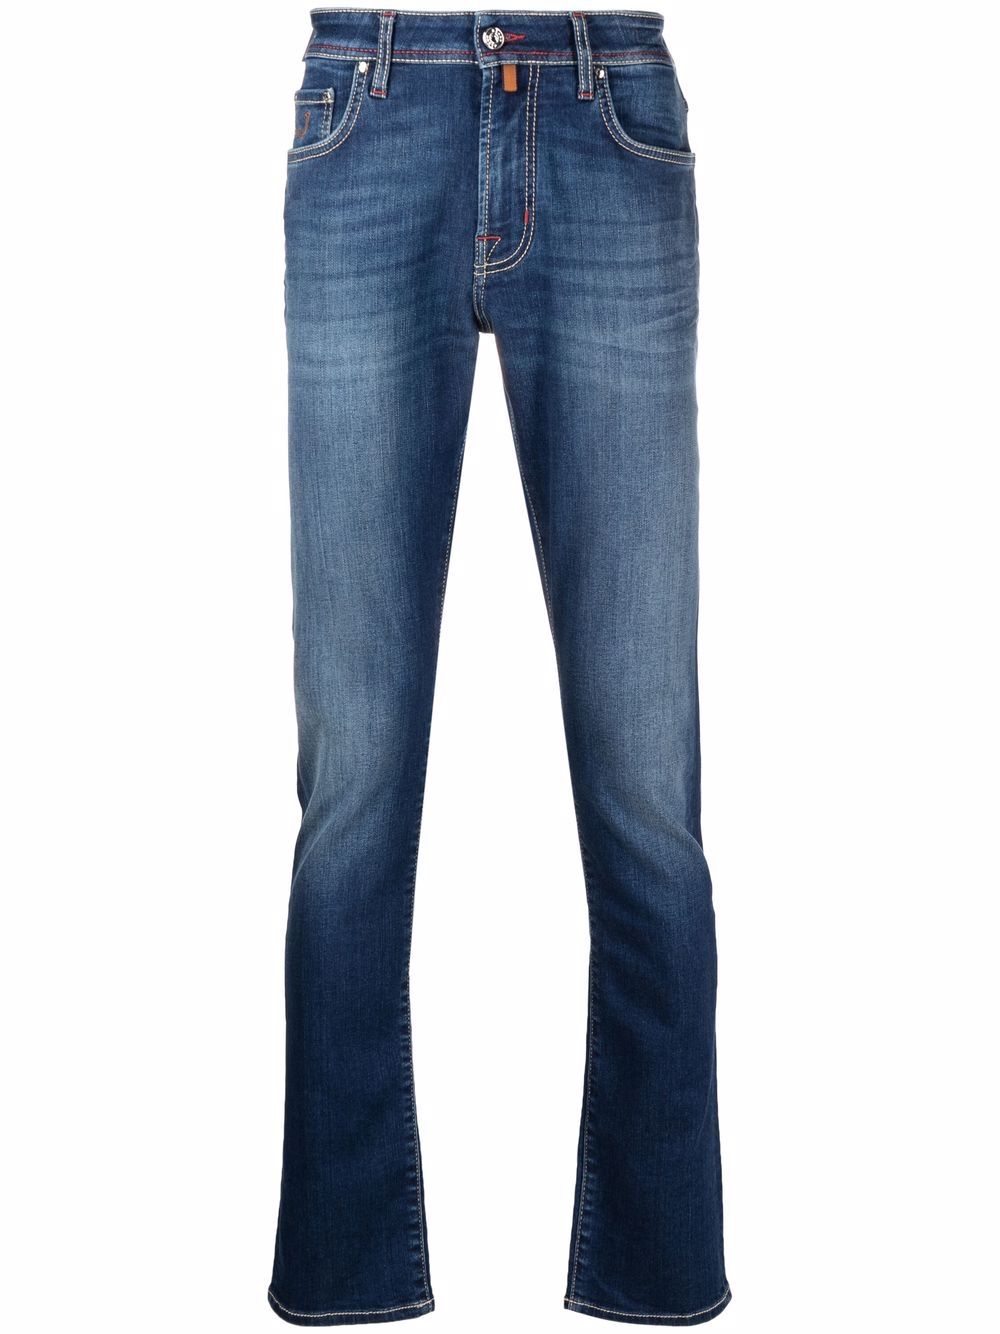 фото Jacob cohen джинсы кроя слим с вышитым логотипом